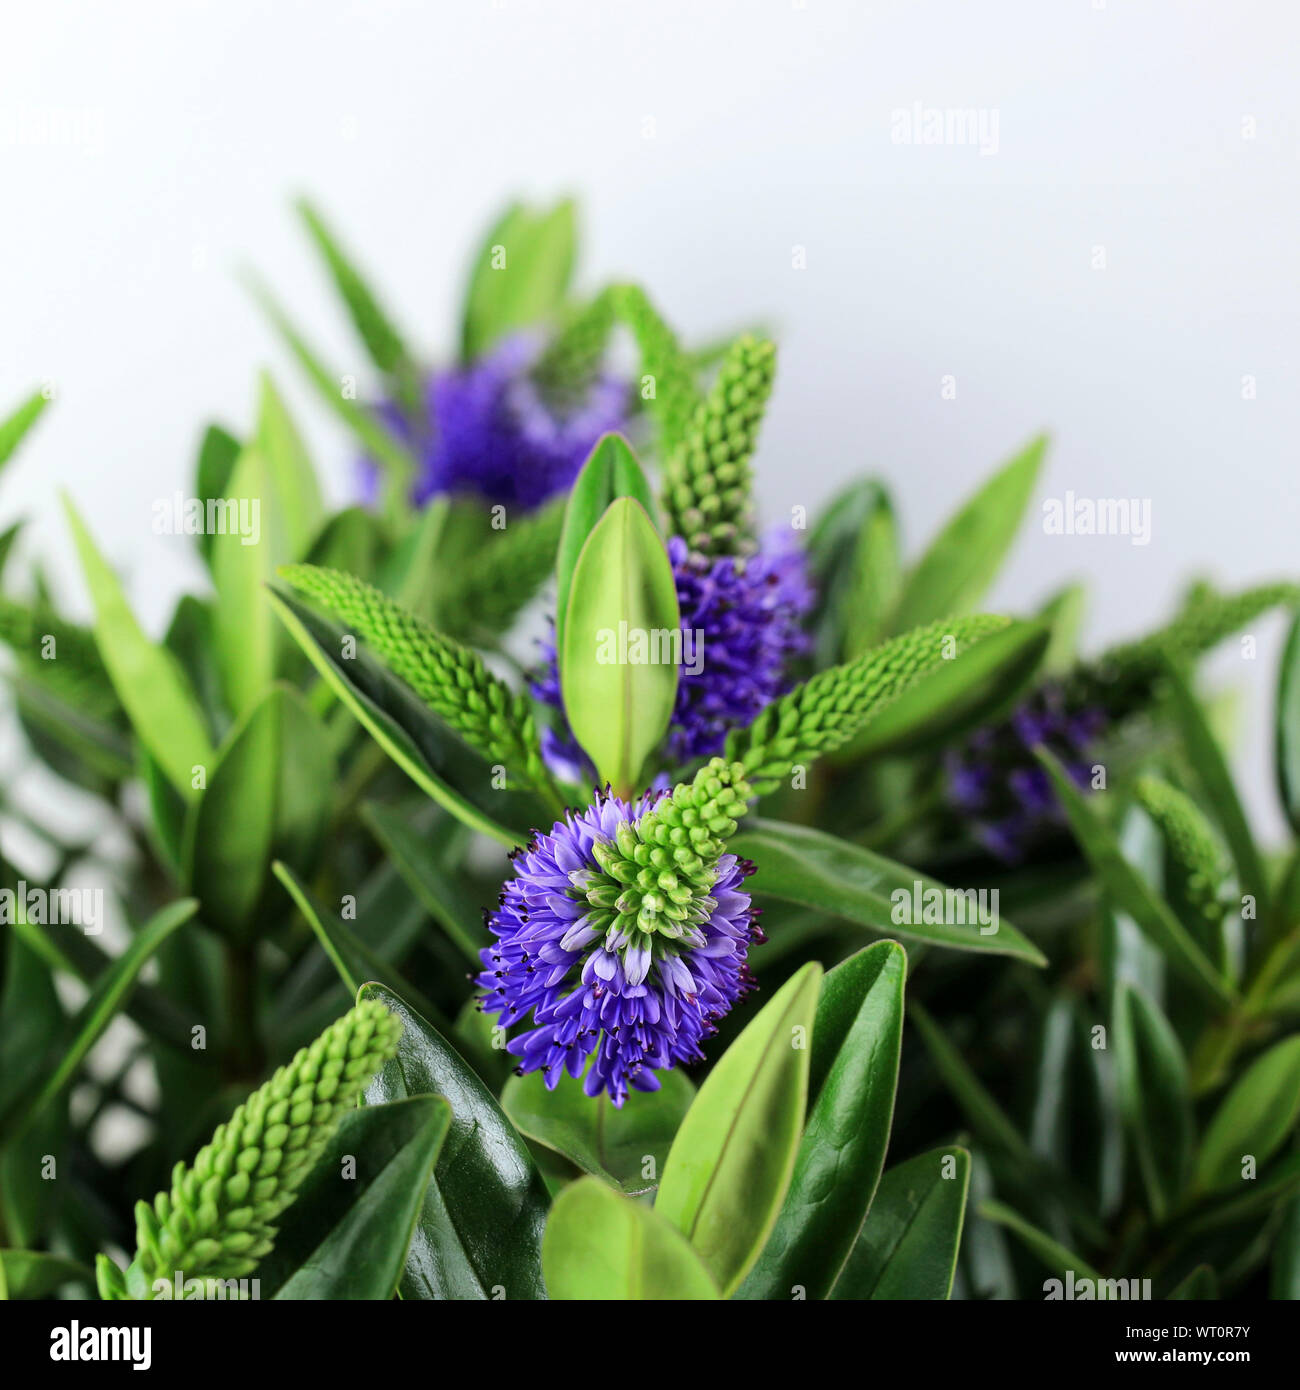 Hebe plant isolated on white background. Close-up. New Zealand plant. Stock Photo